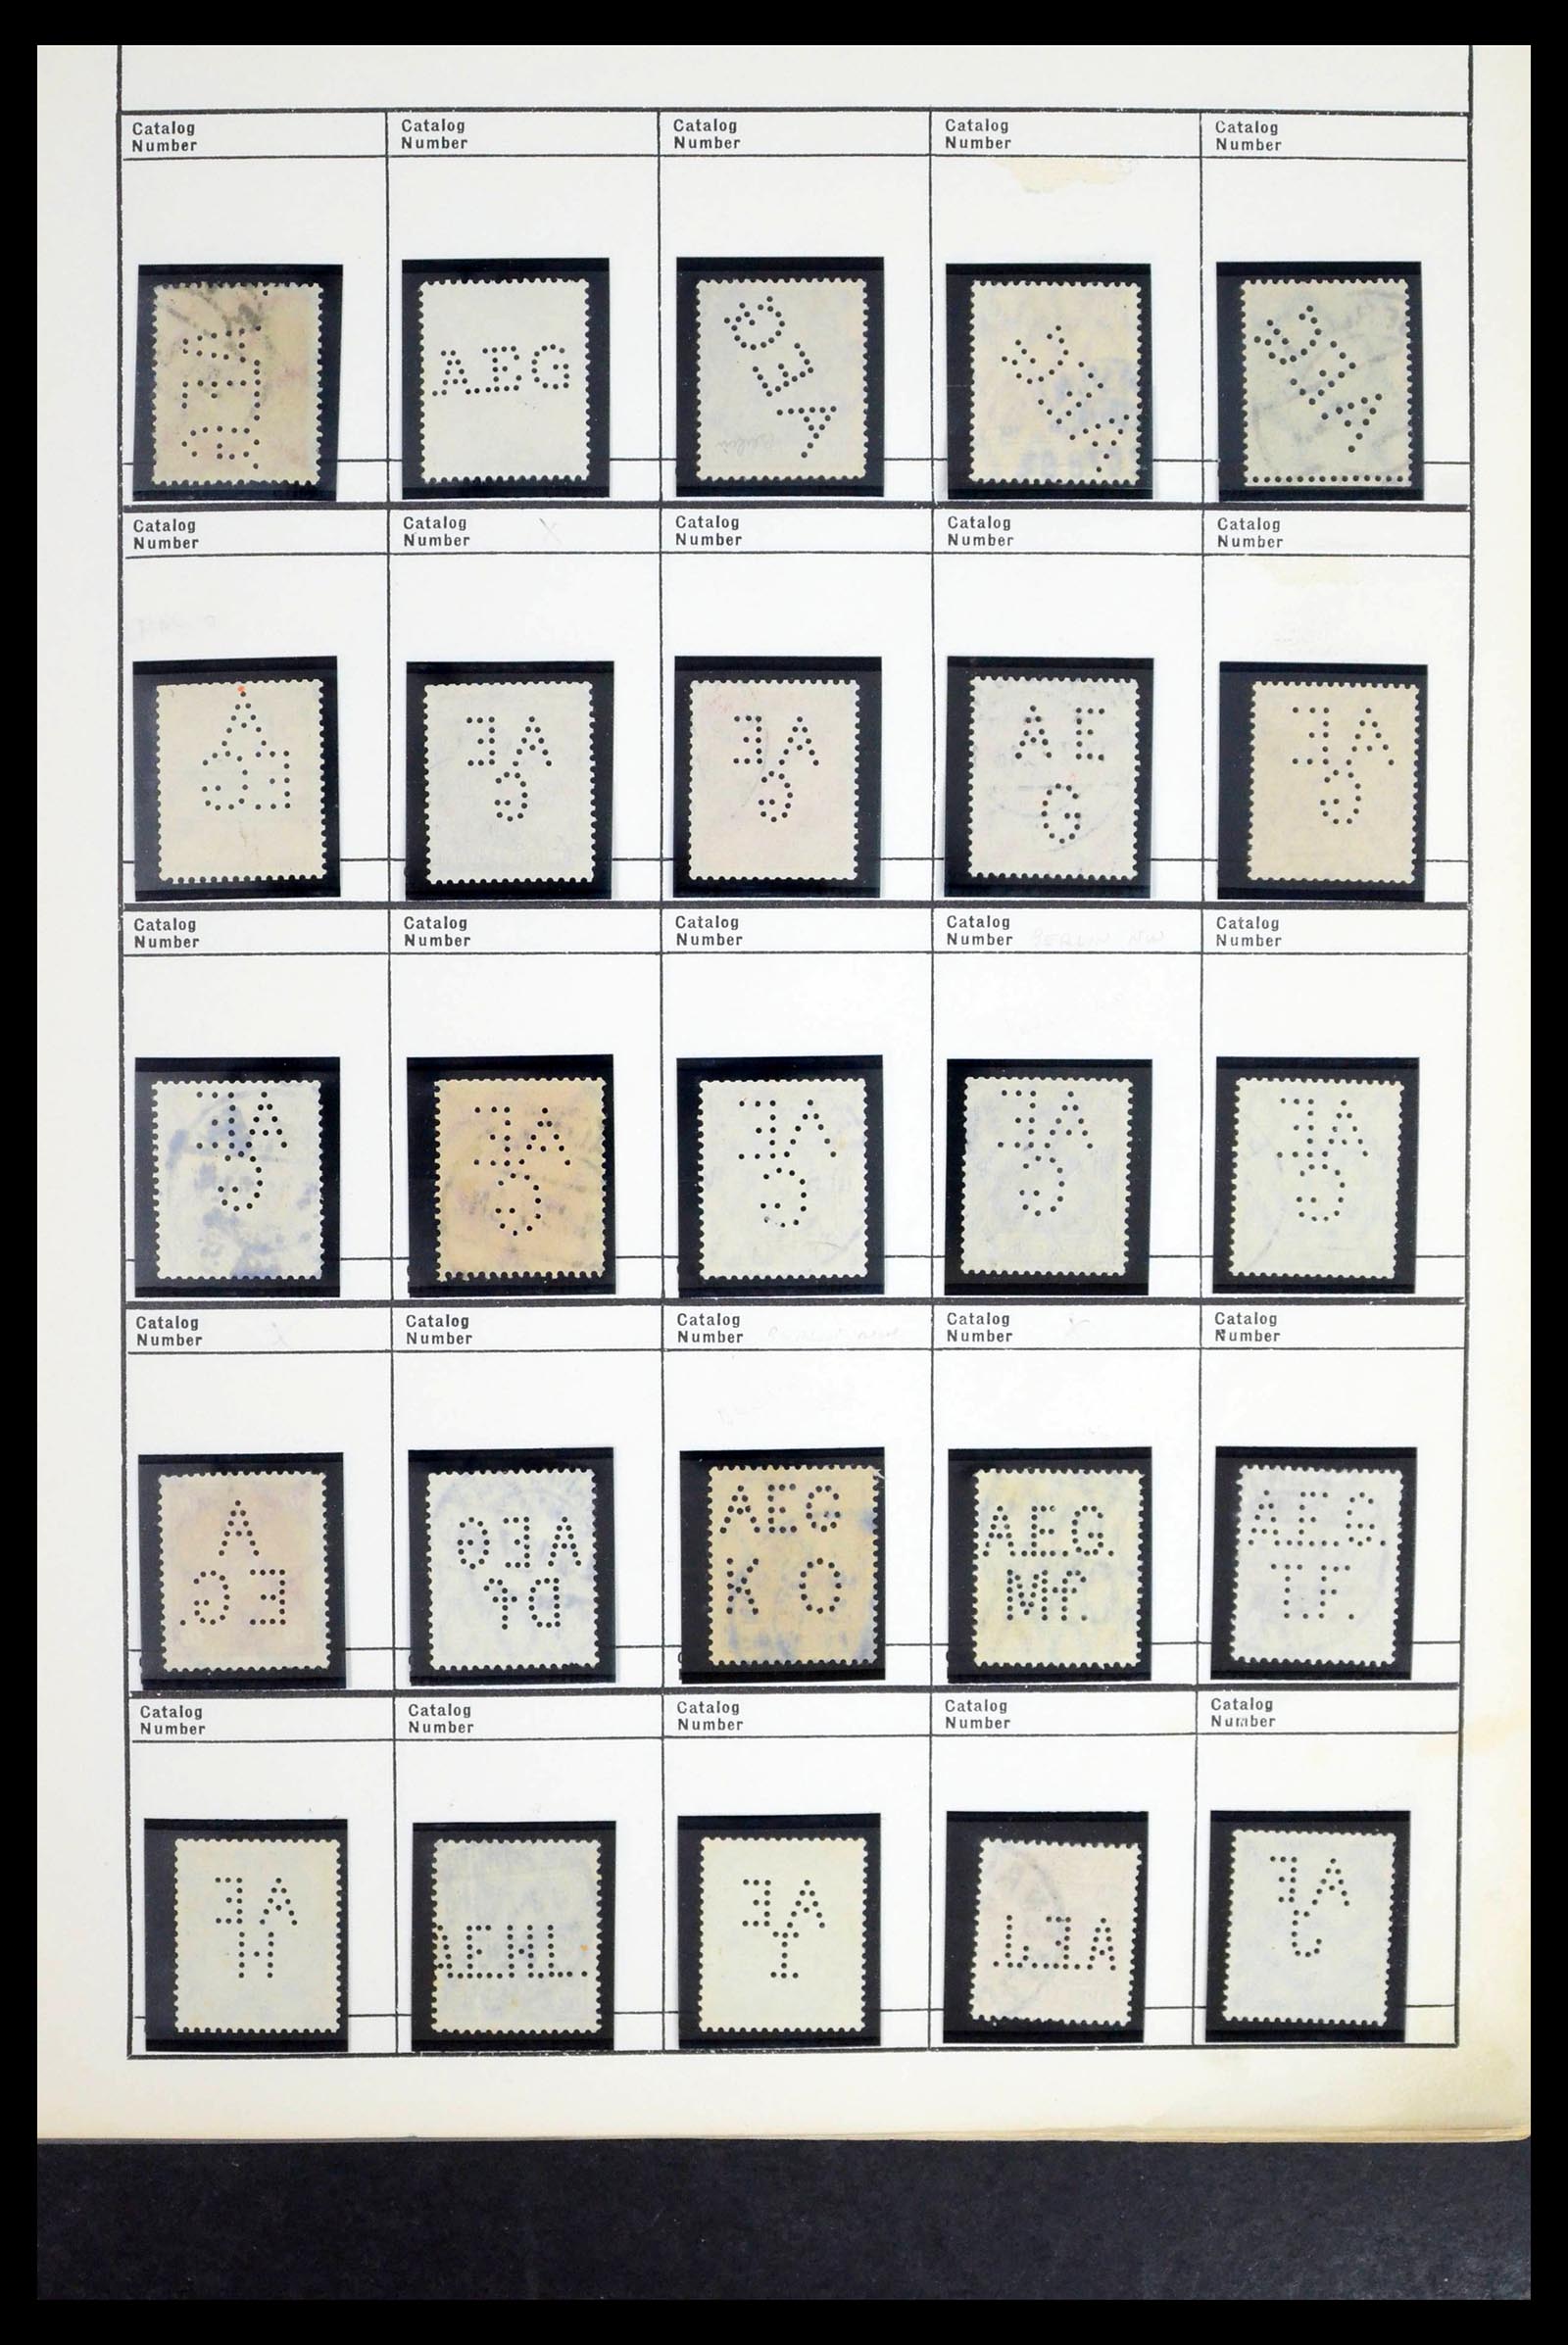 39480 0014 - Stamp collection 39480 German Reich perfins 1880-1955.